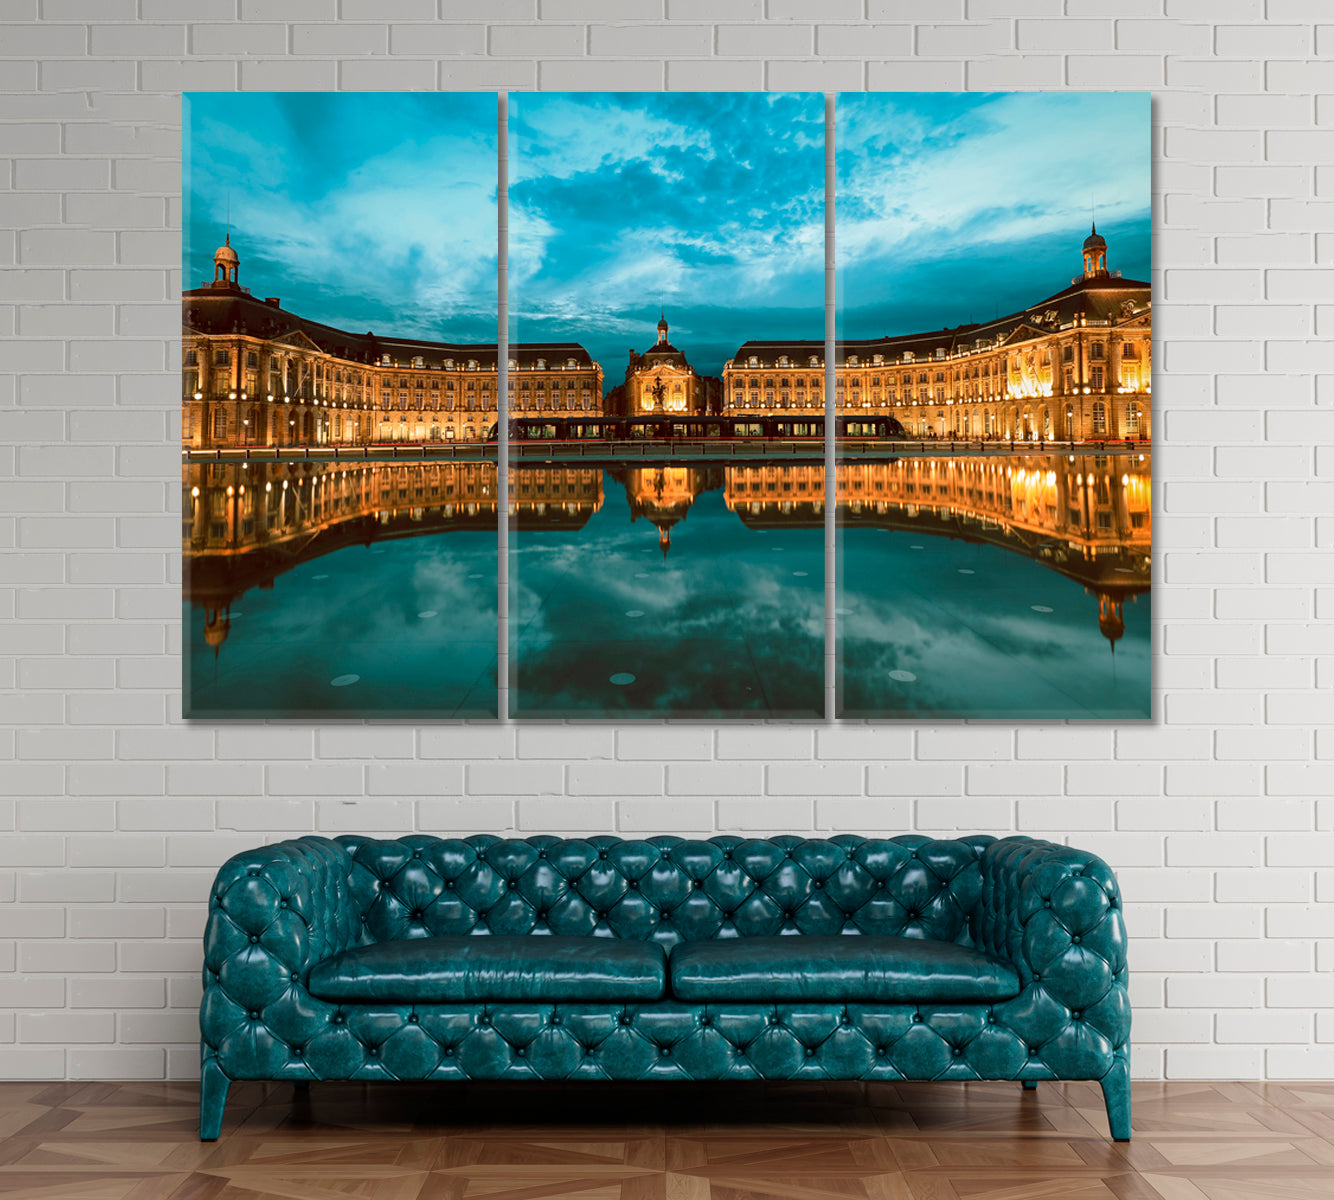 Place de la Bourse Bordeaux France Canvas Print ArtLexy 3 Panels 36"x24" inches 